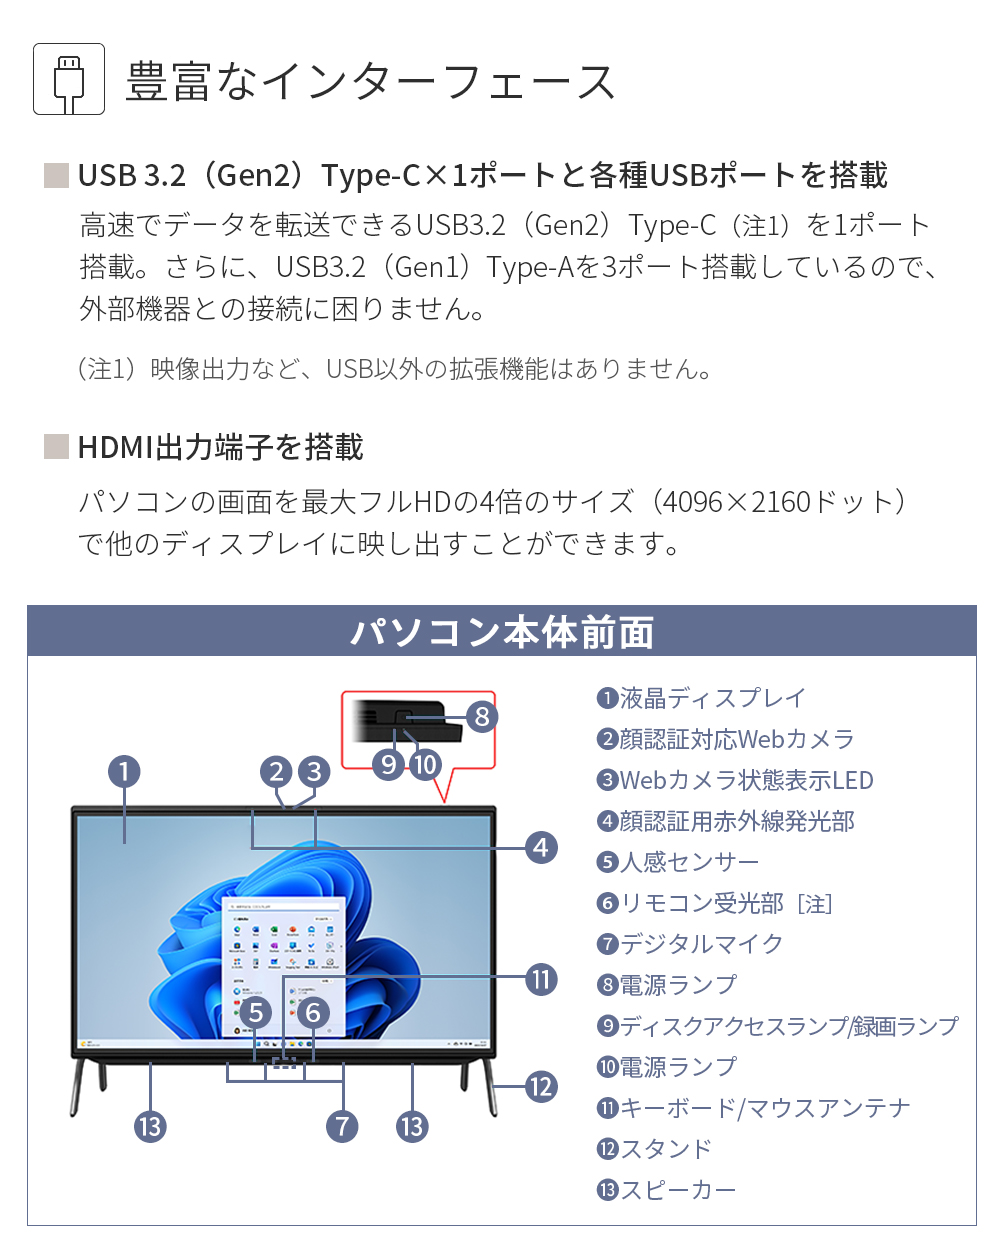 デスクトップパソコン 新品 富士通 ESPRIMO FH WF1/G3 23.8型